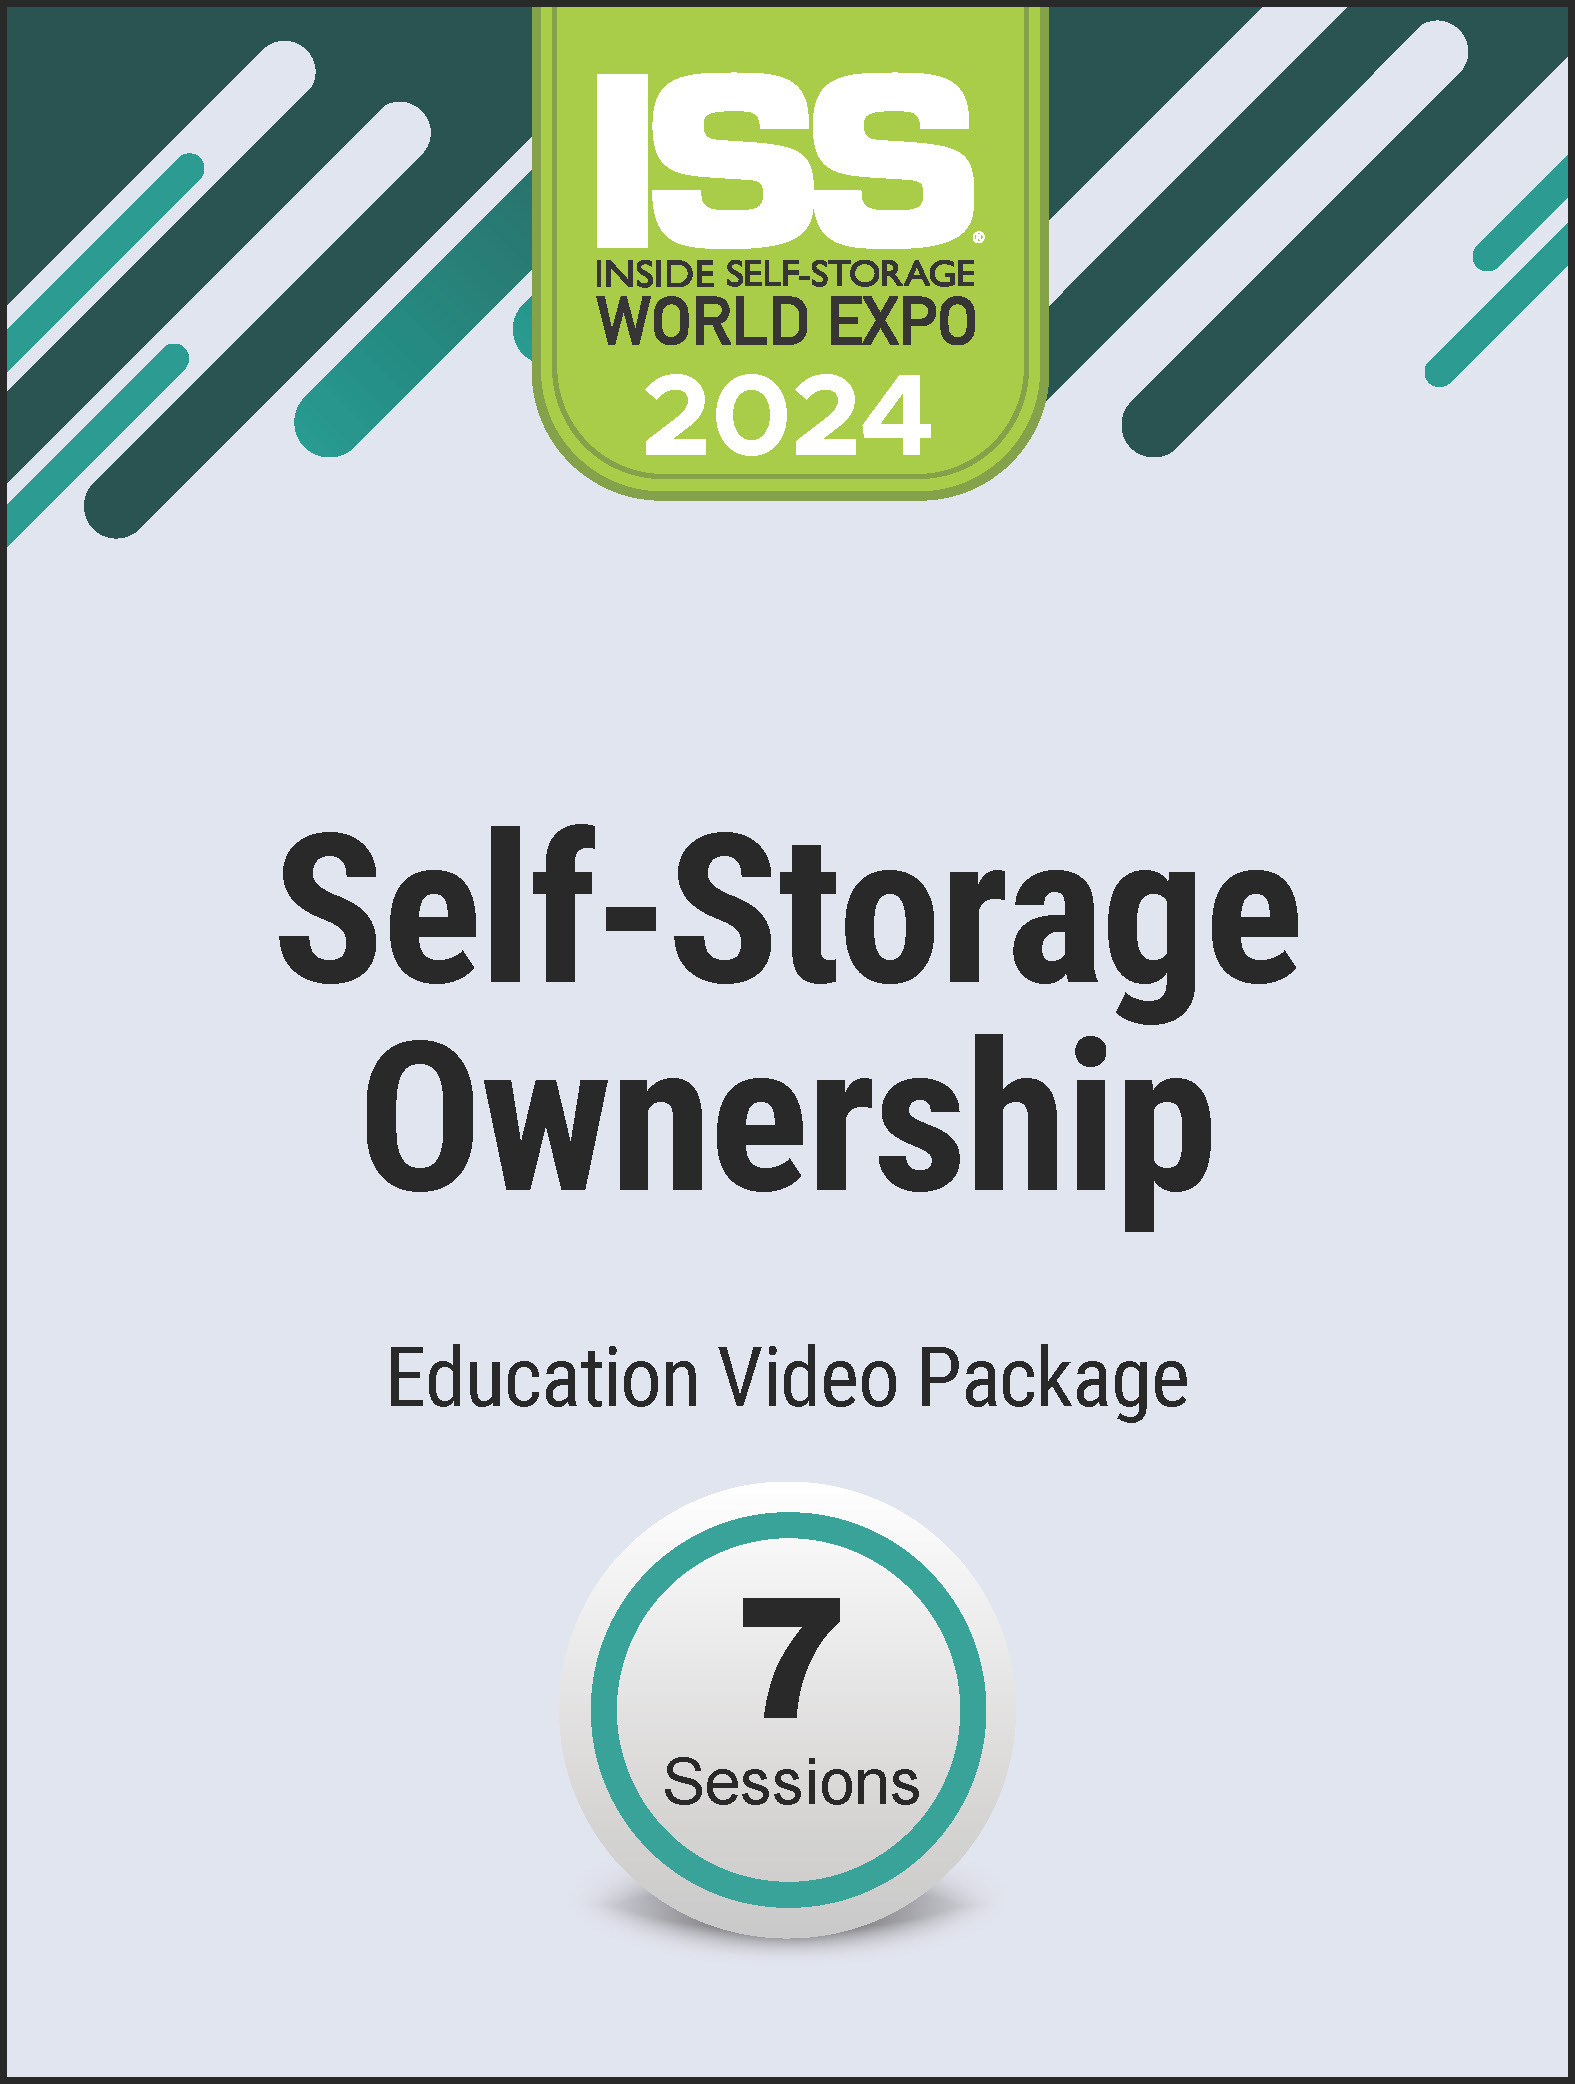 Video Pre-Order PDF - Self-Storage Ownership 2024 Education Video Package